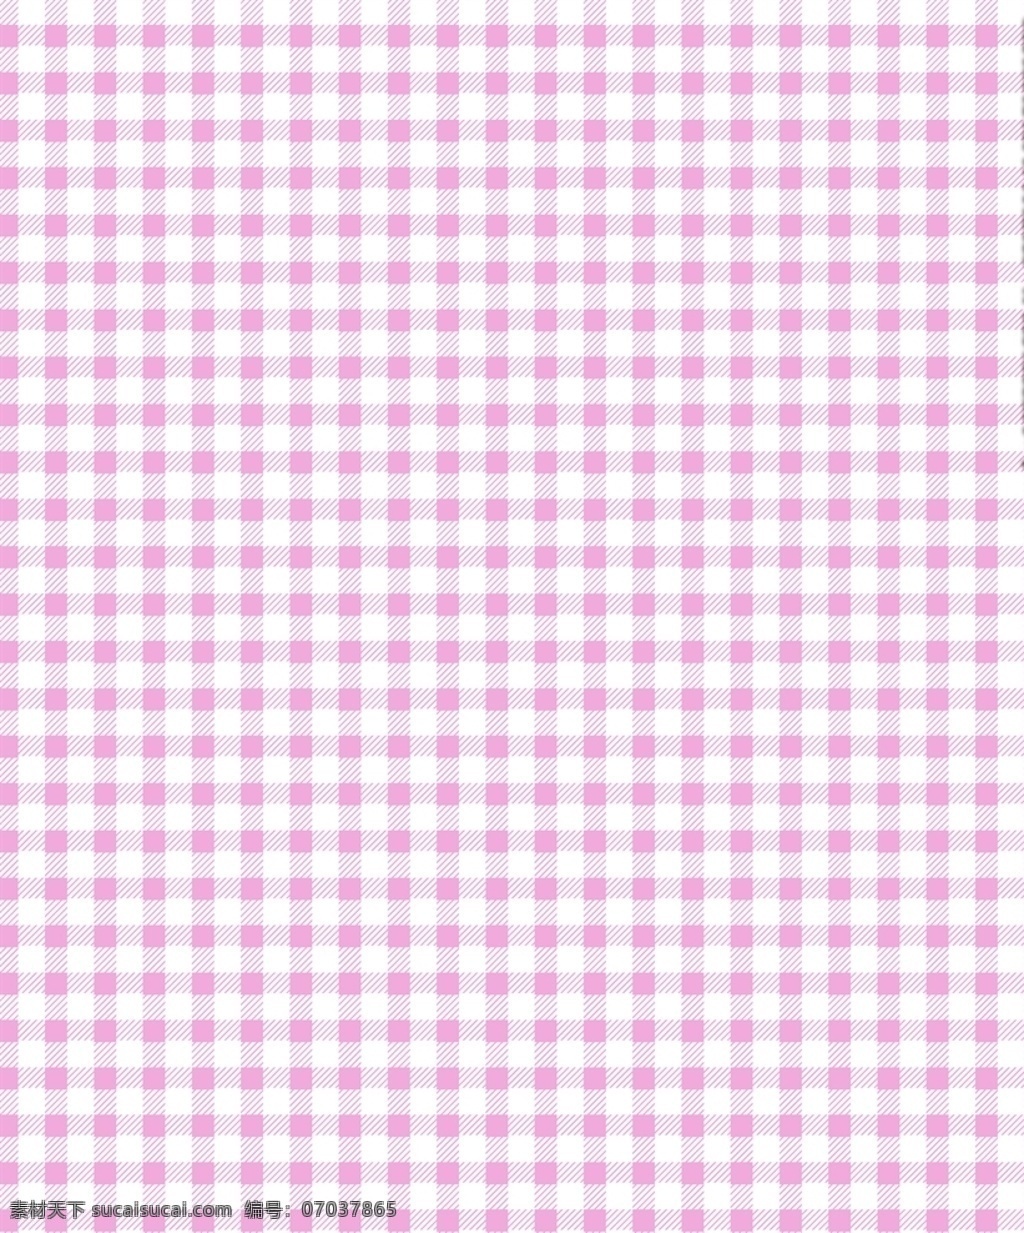 格子 几何格子 斜线格子 粉色格子 格子花型 格子素材 男装花型 底纹边框 背景底纹